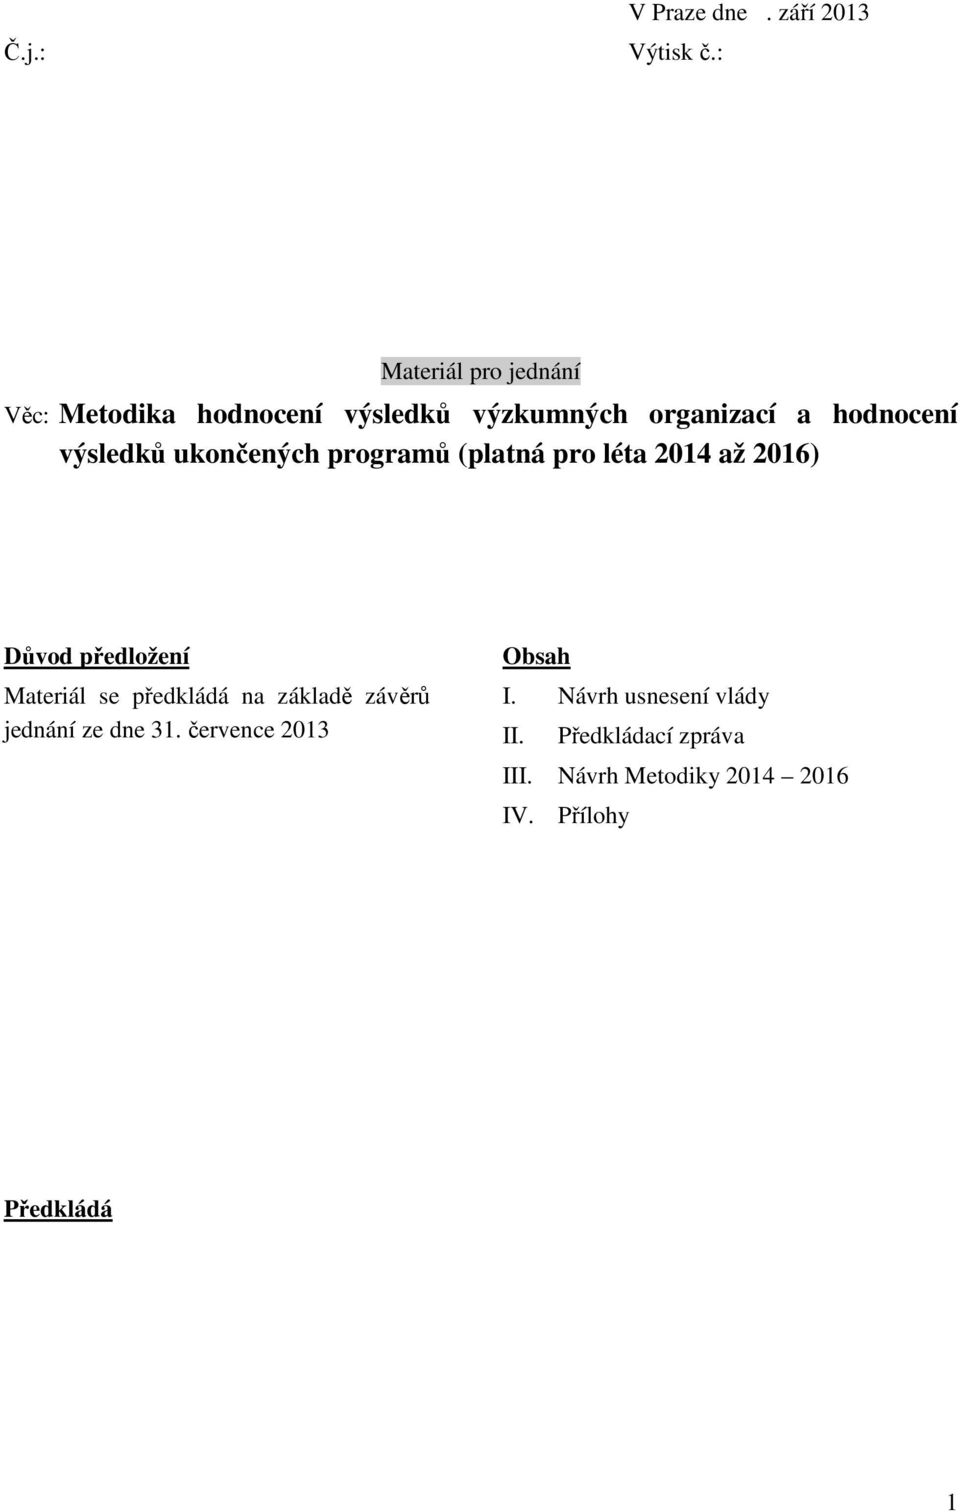 výsledků ukončených programů (platná pro léta 2014 až 2016) Důvod předložení Materiál se